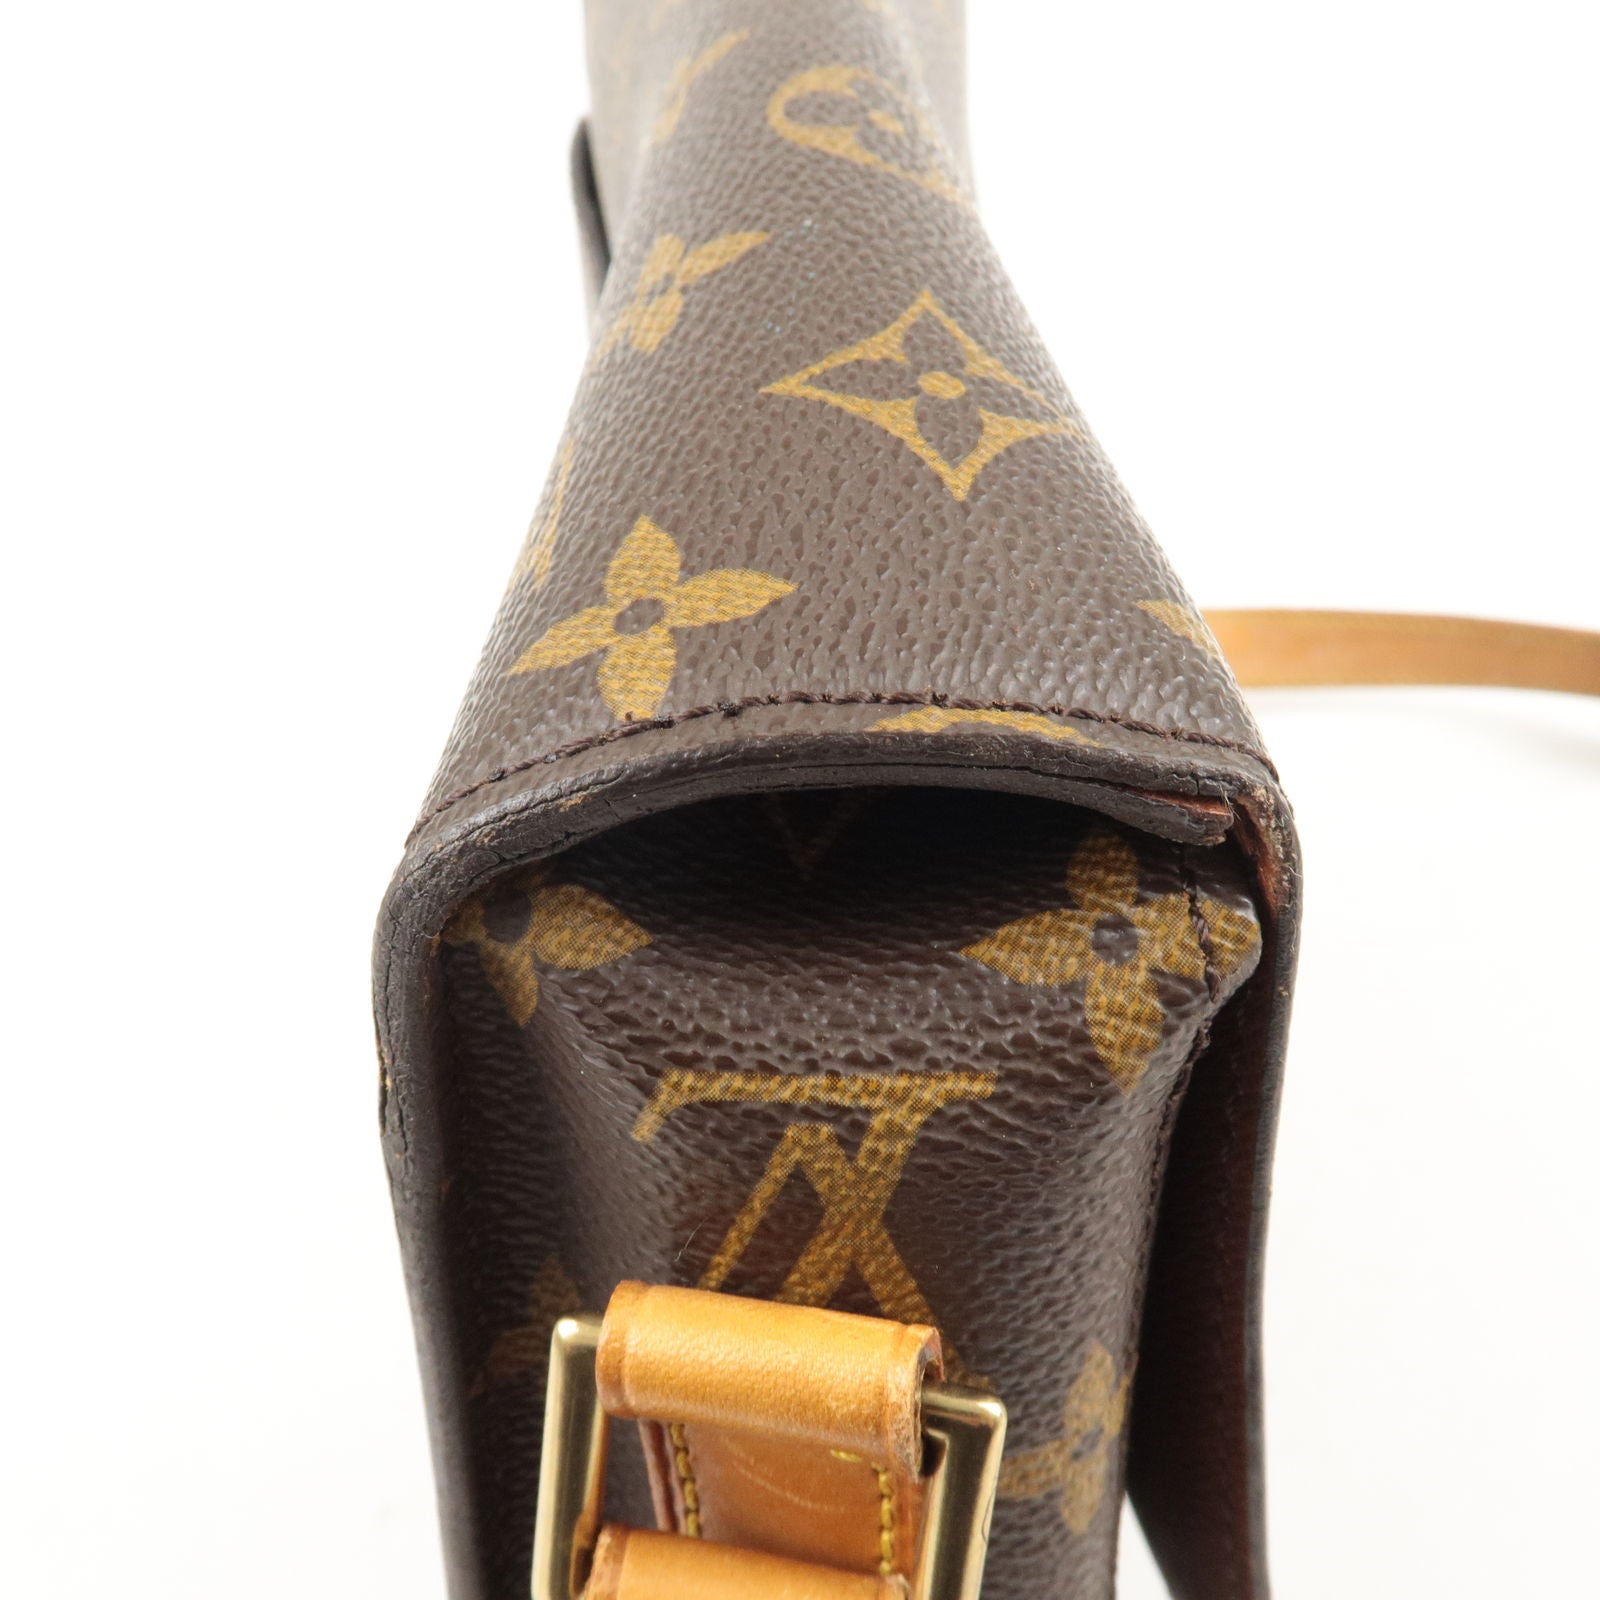 Louis Vuitton Carmel Mahina Leather Hobo Bag - Cream print